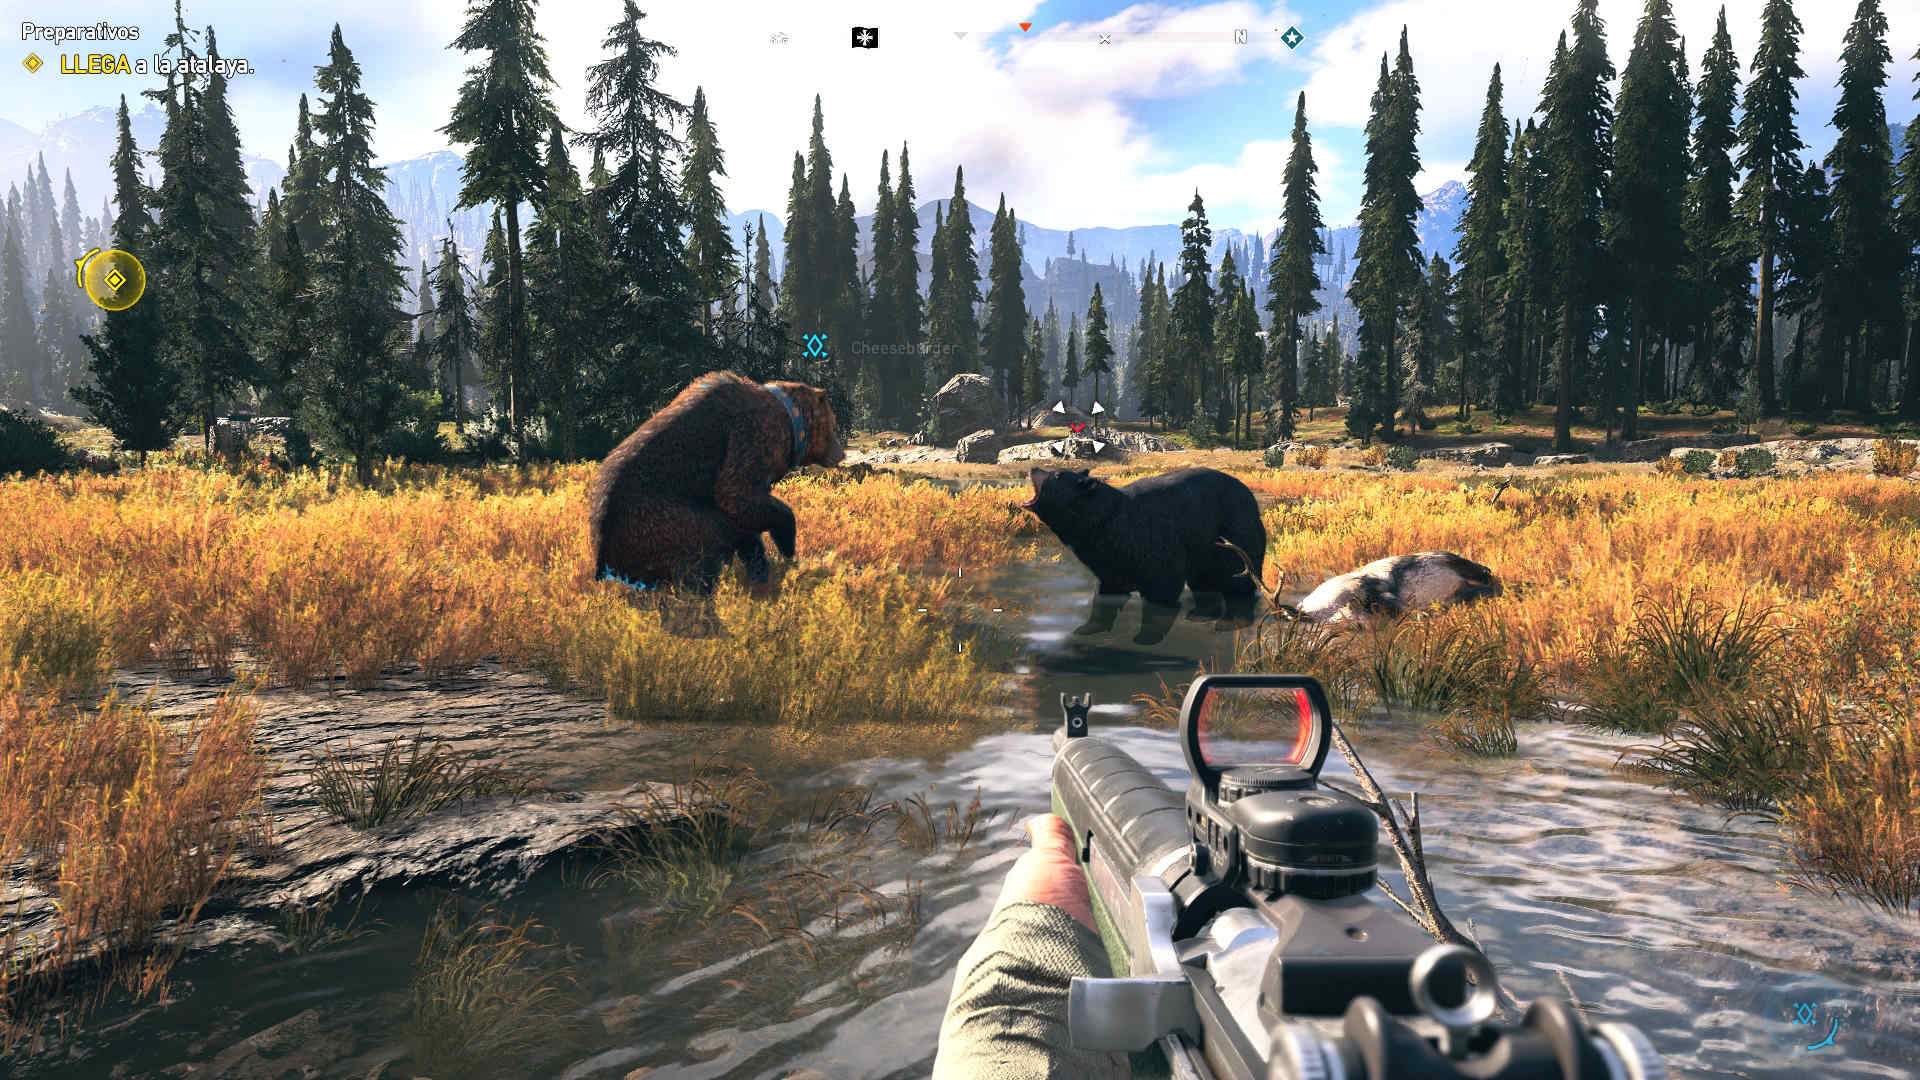 Far Cry 5 puede disfrutarse aún sin tener un PC último modelo